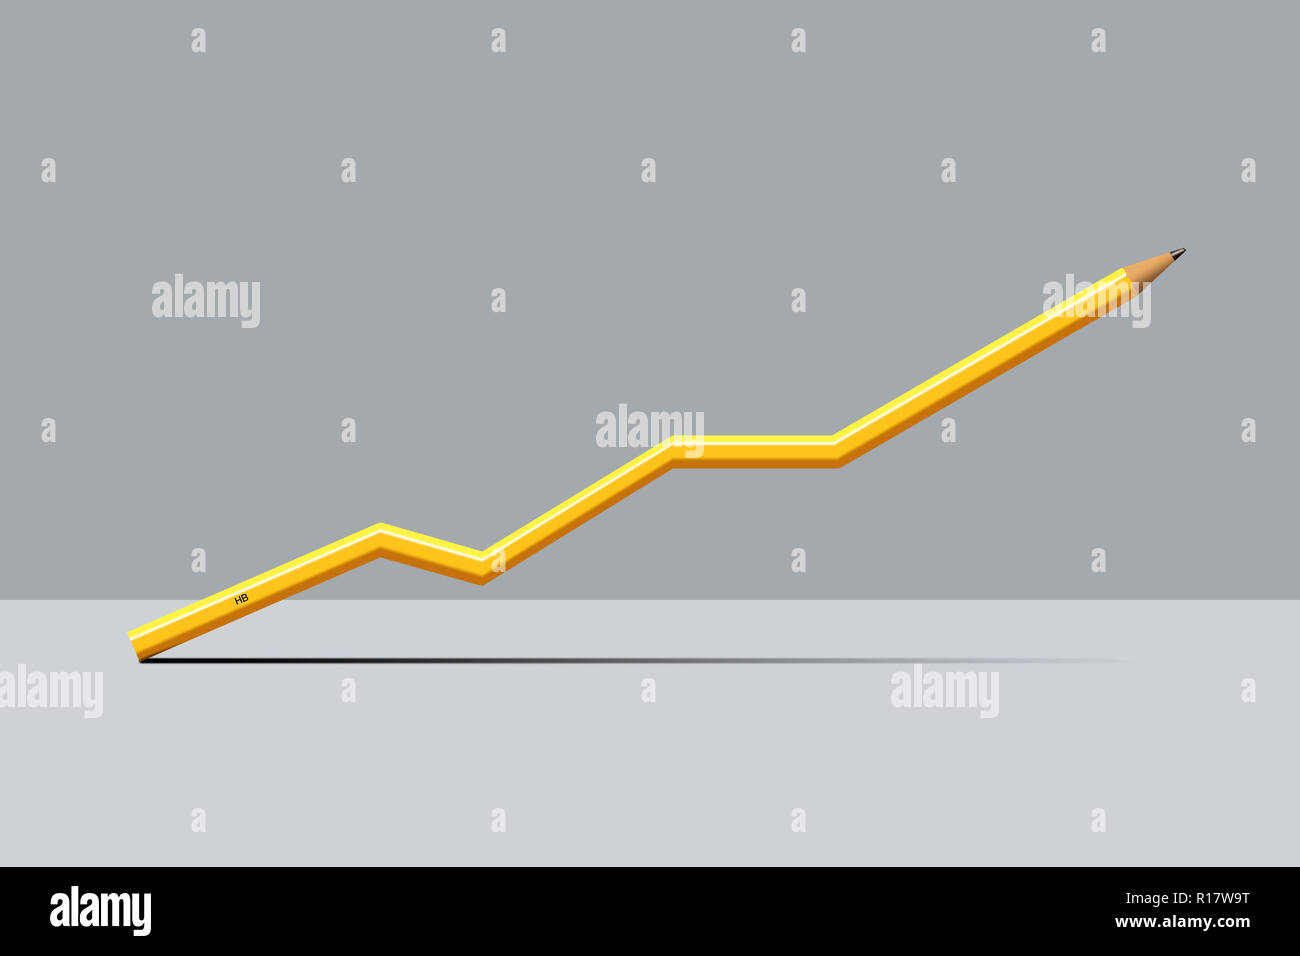 Matita gialla nella forma di crescita grafico, sfondo grigio, immagine digitale Foto Stock